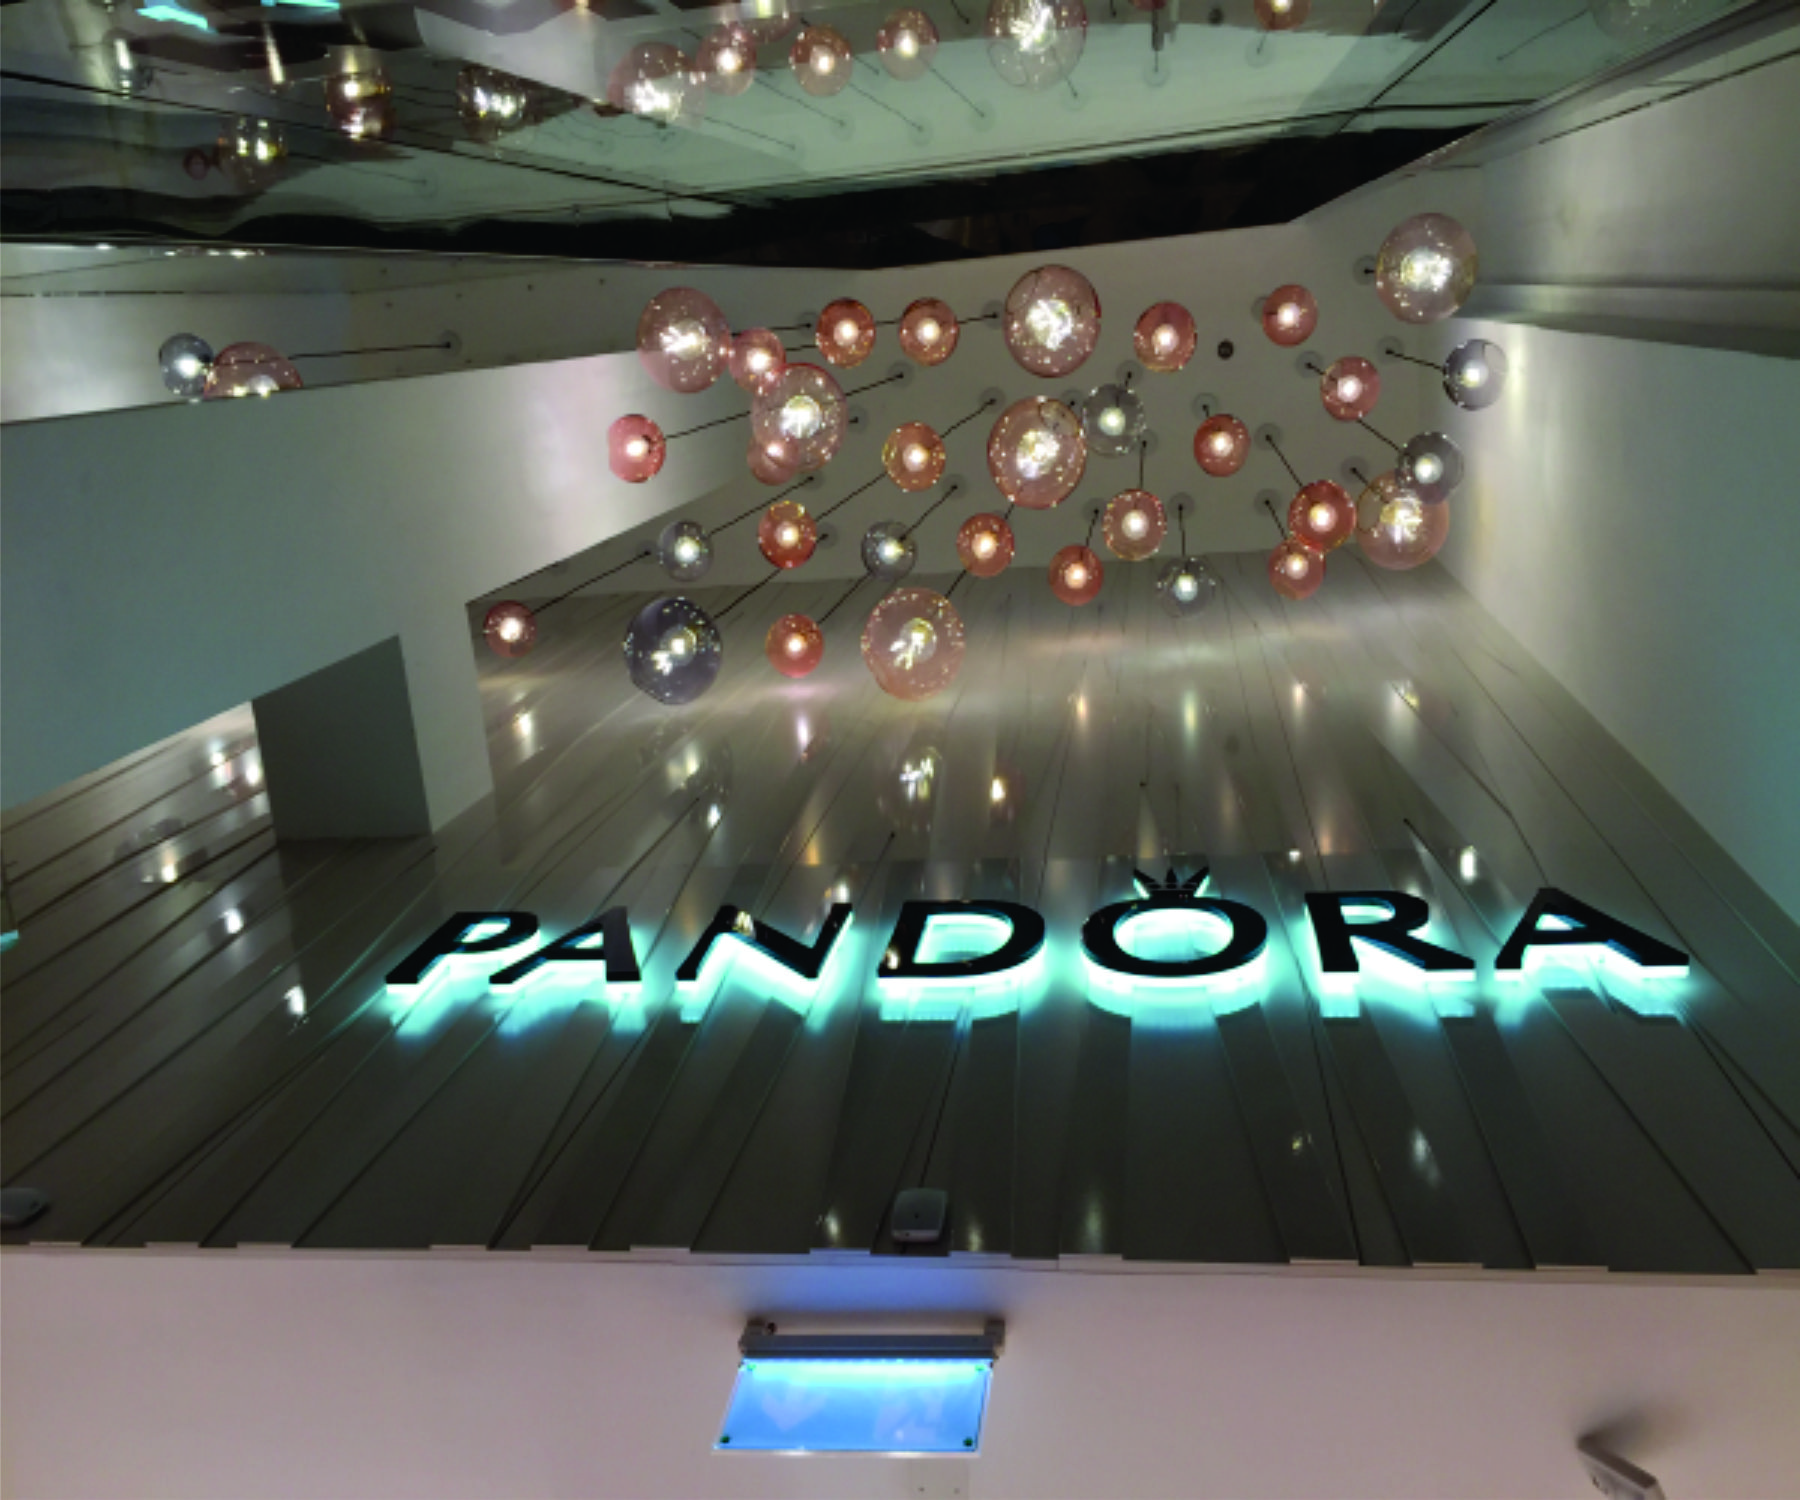 Pandoora-Showroom